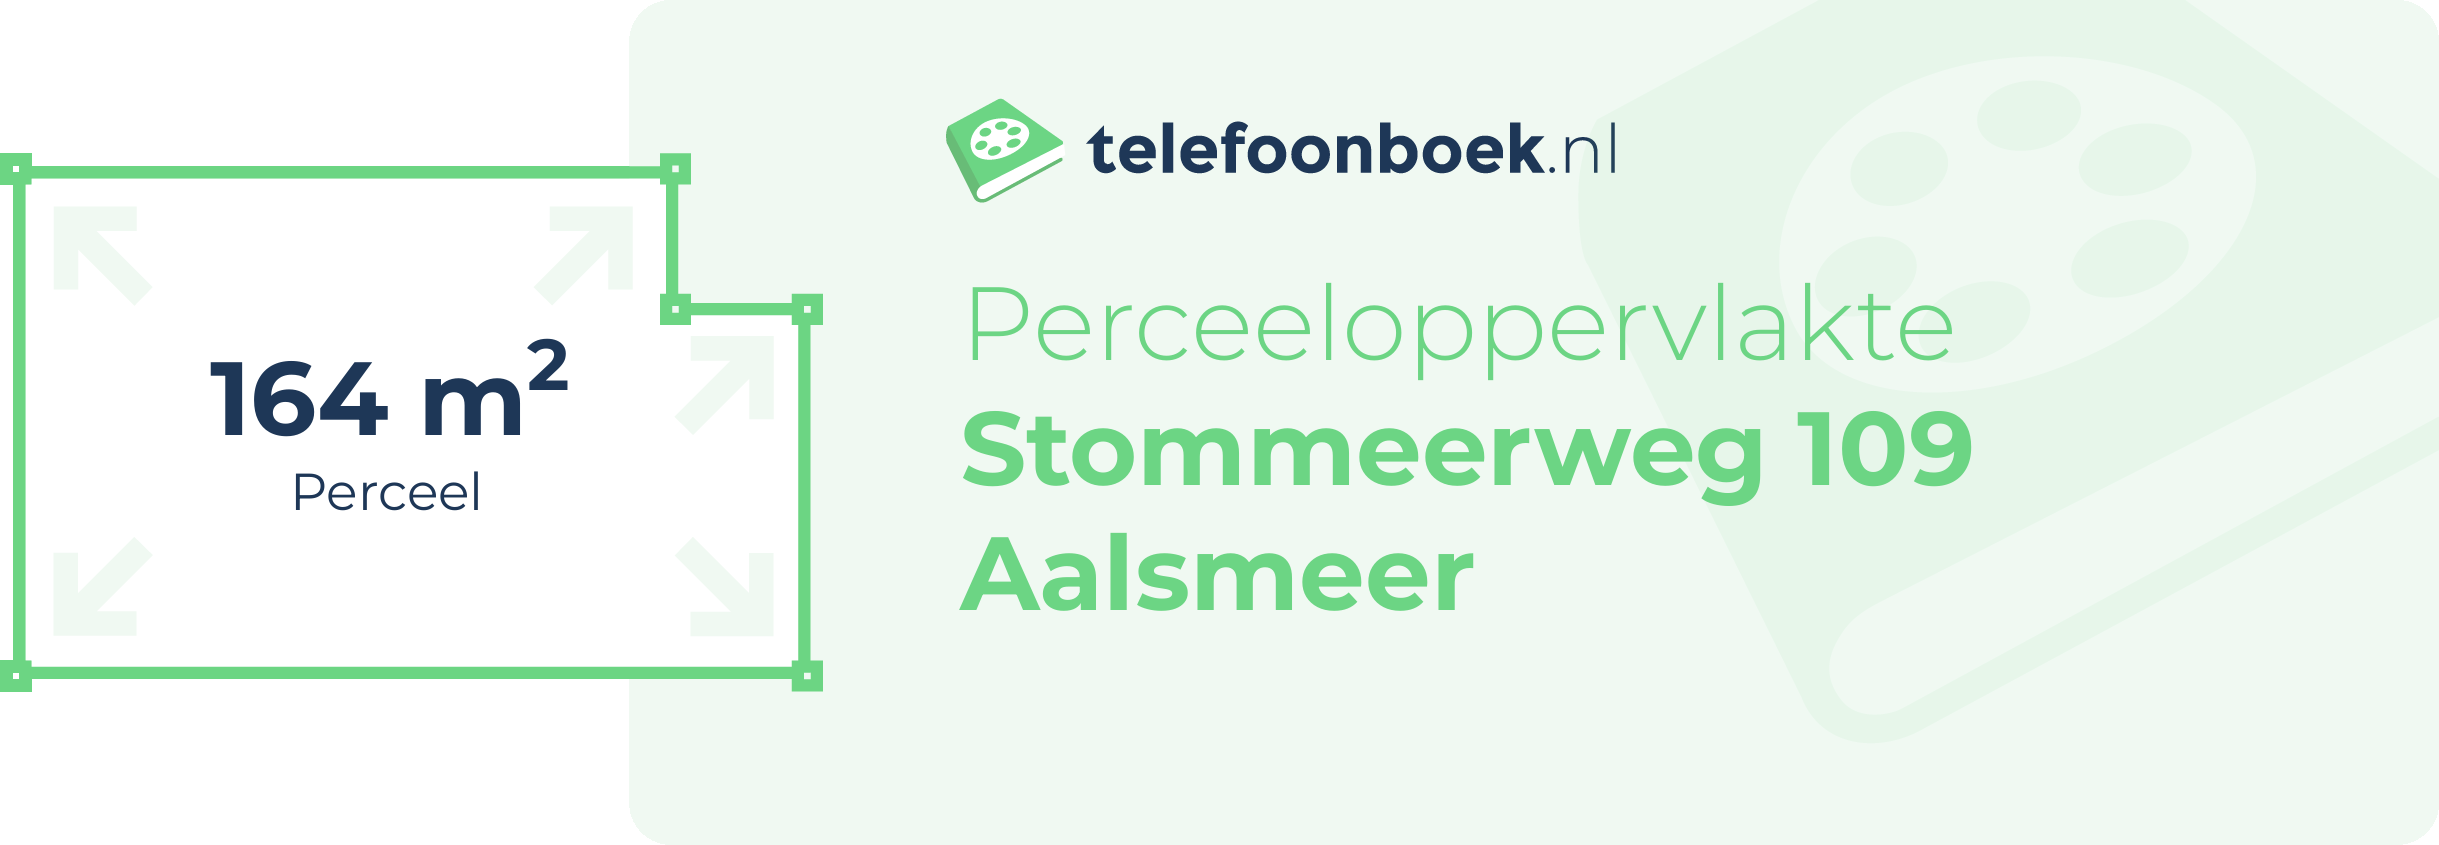 Perceeloppervlakte Stommeerweg 109 Aalsmeer